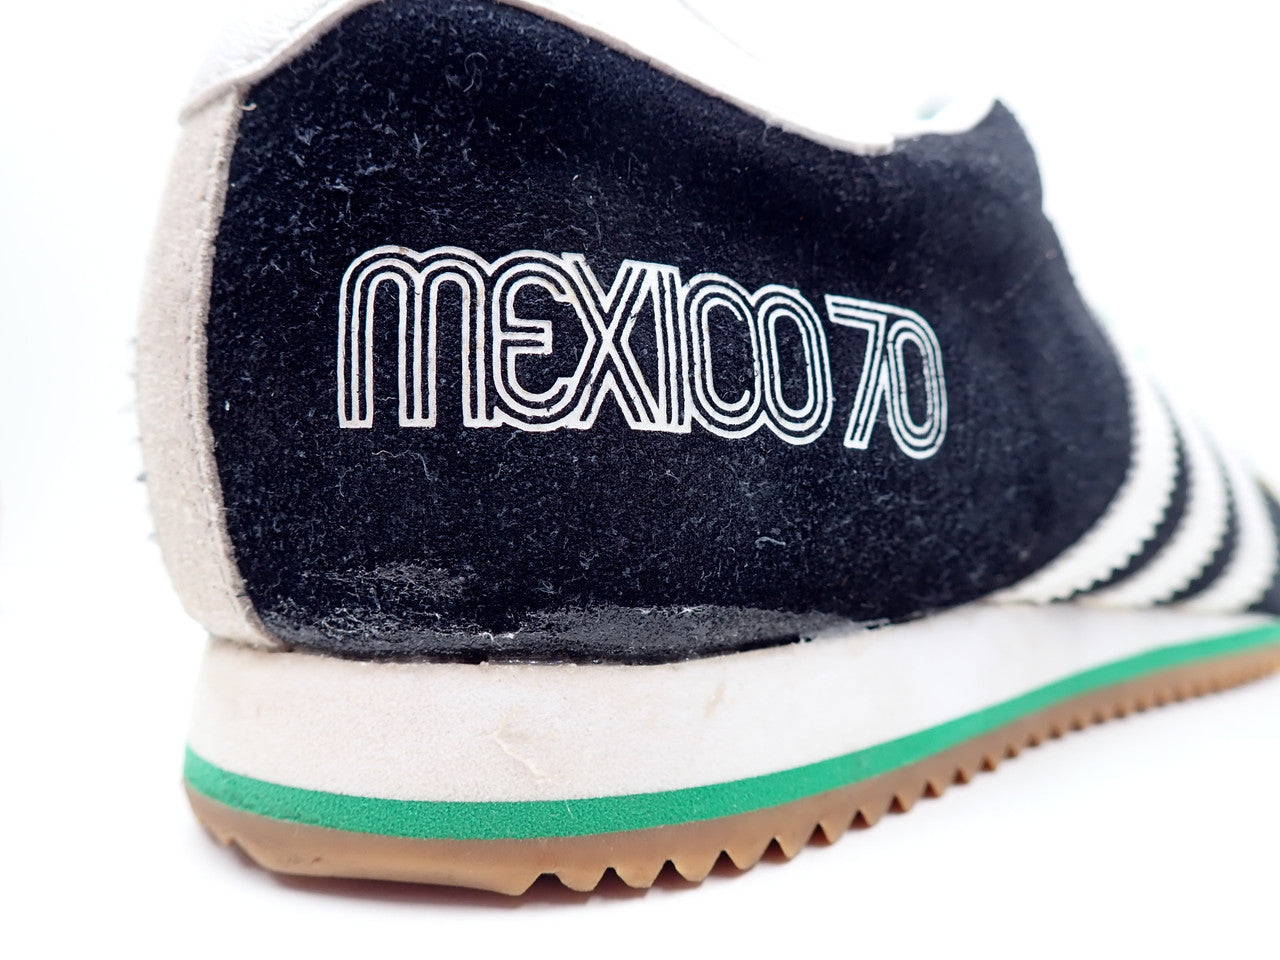 Adidas Mexico 70